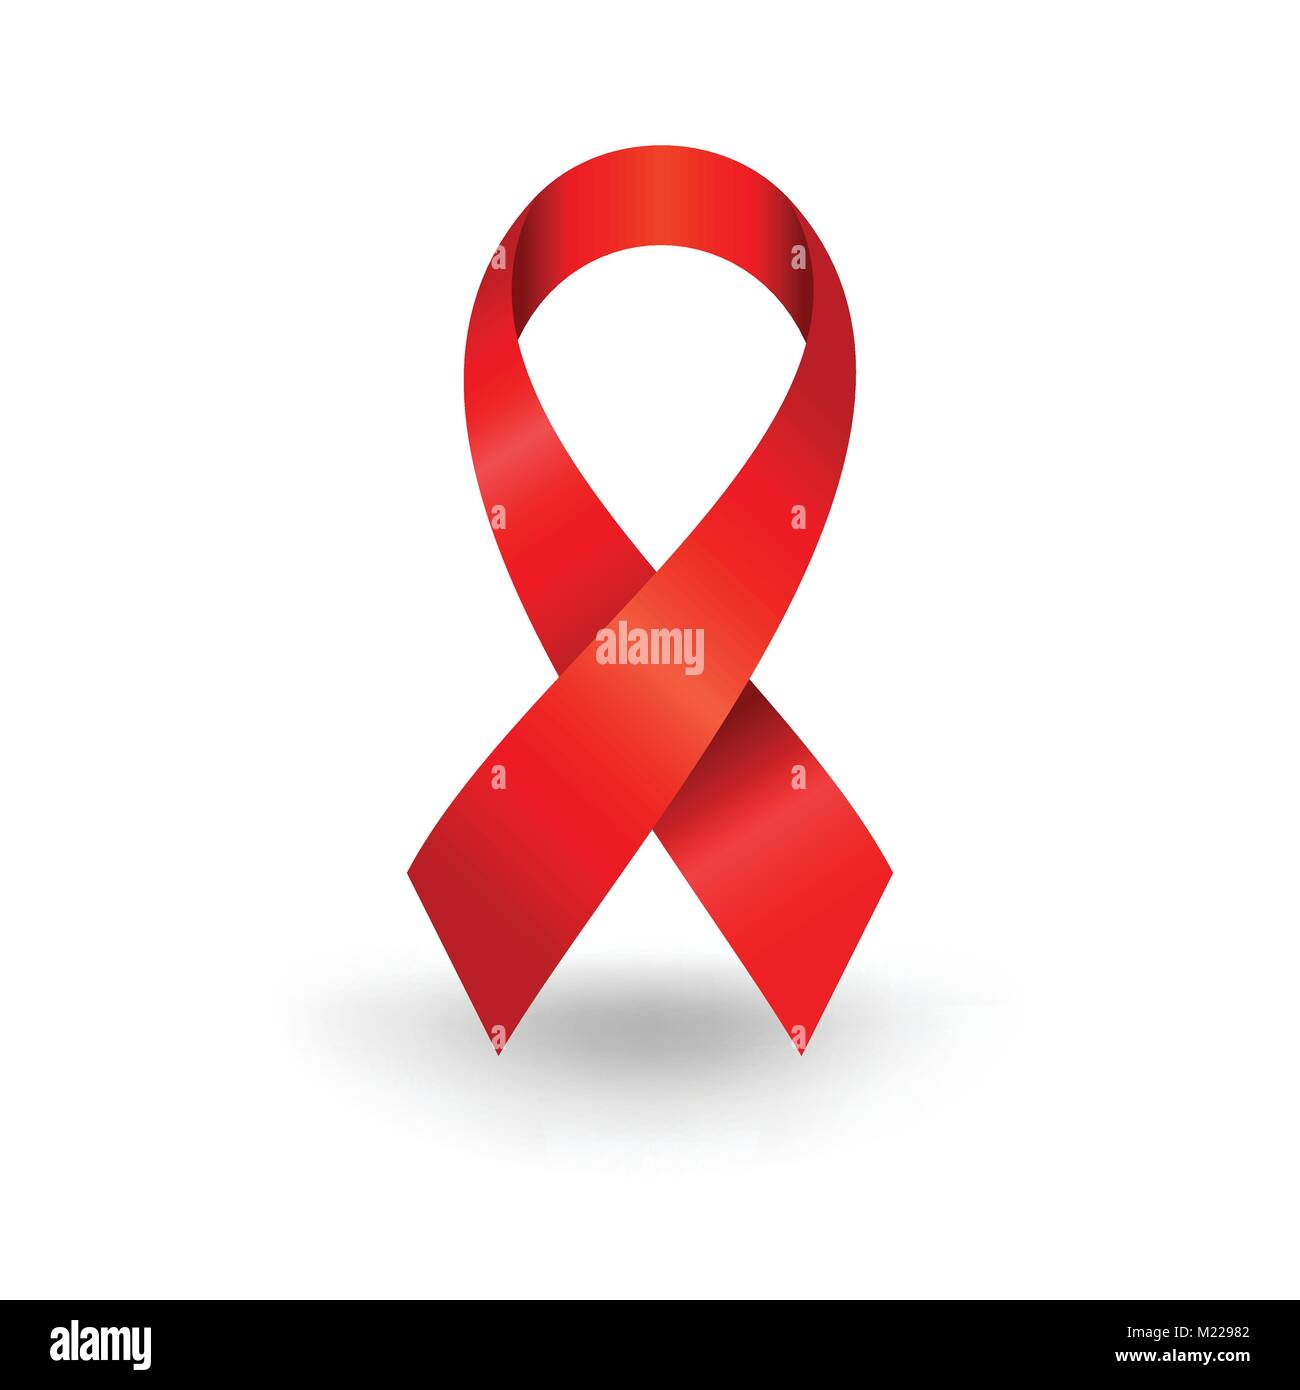 Le VIH Sida réaliste Ruban Rouge Symbole graphique vectoriel Logo Design Illustration de Vecteur